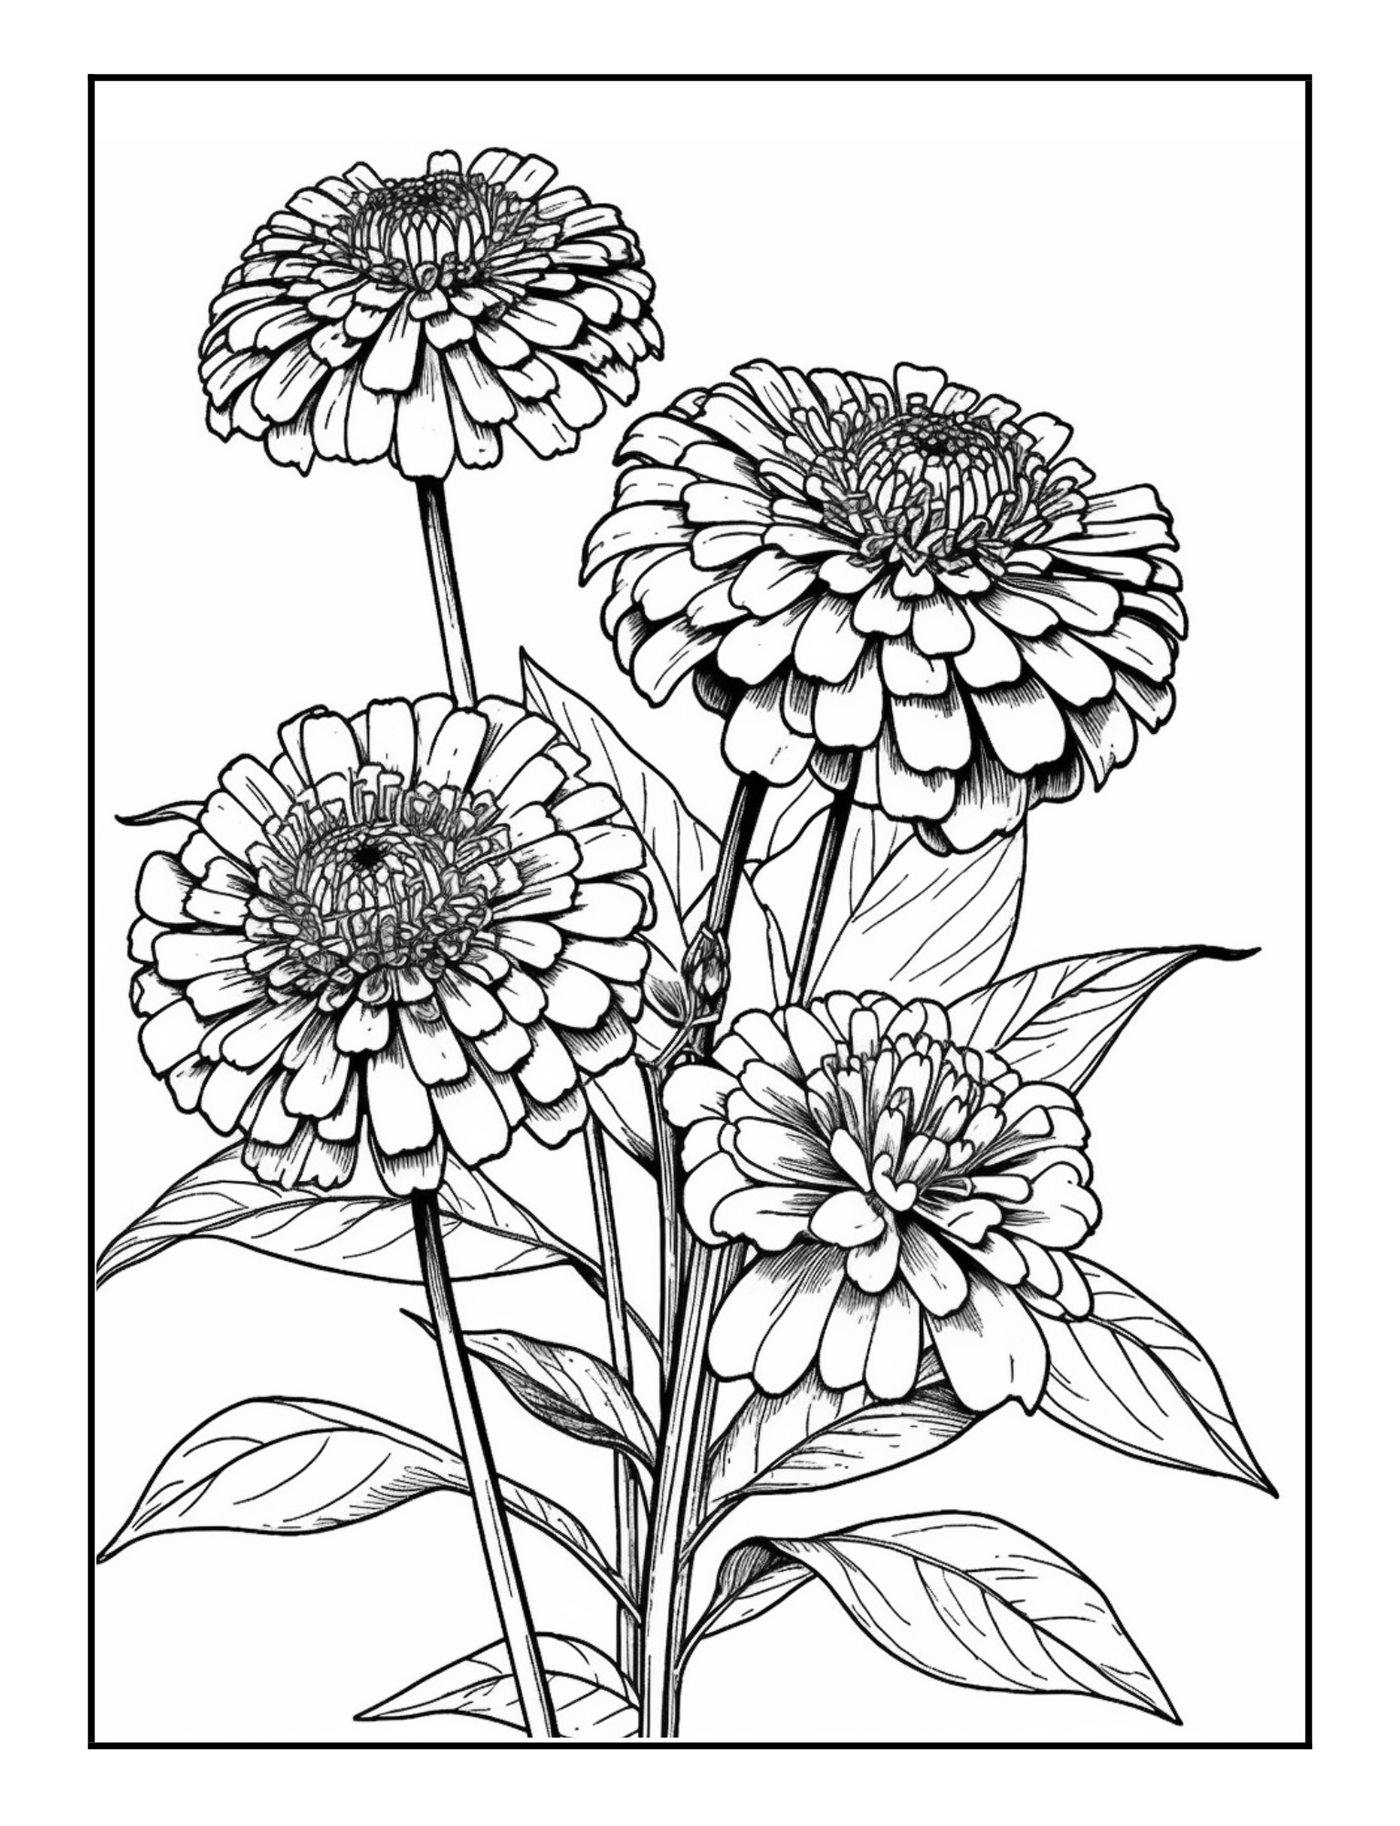 Drawing  Flower Illustration coloring book kdp Book Cover Design publishing   book design floral